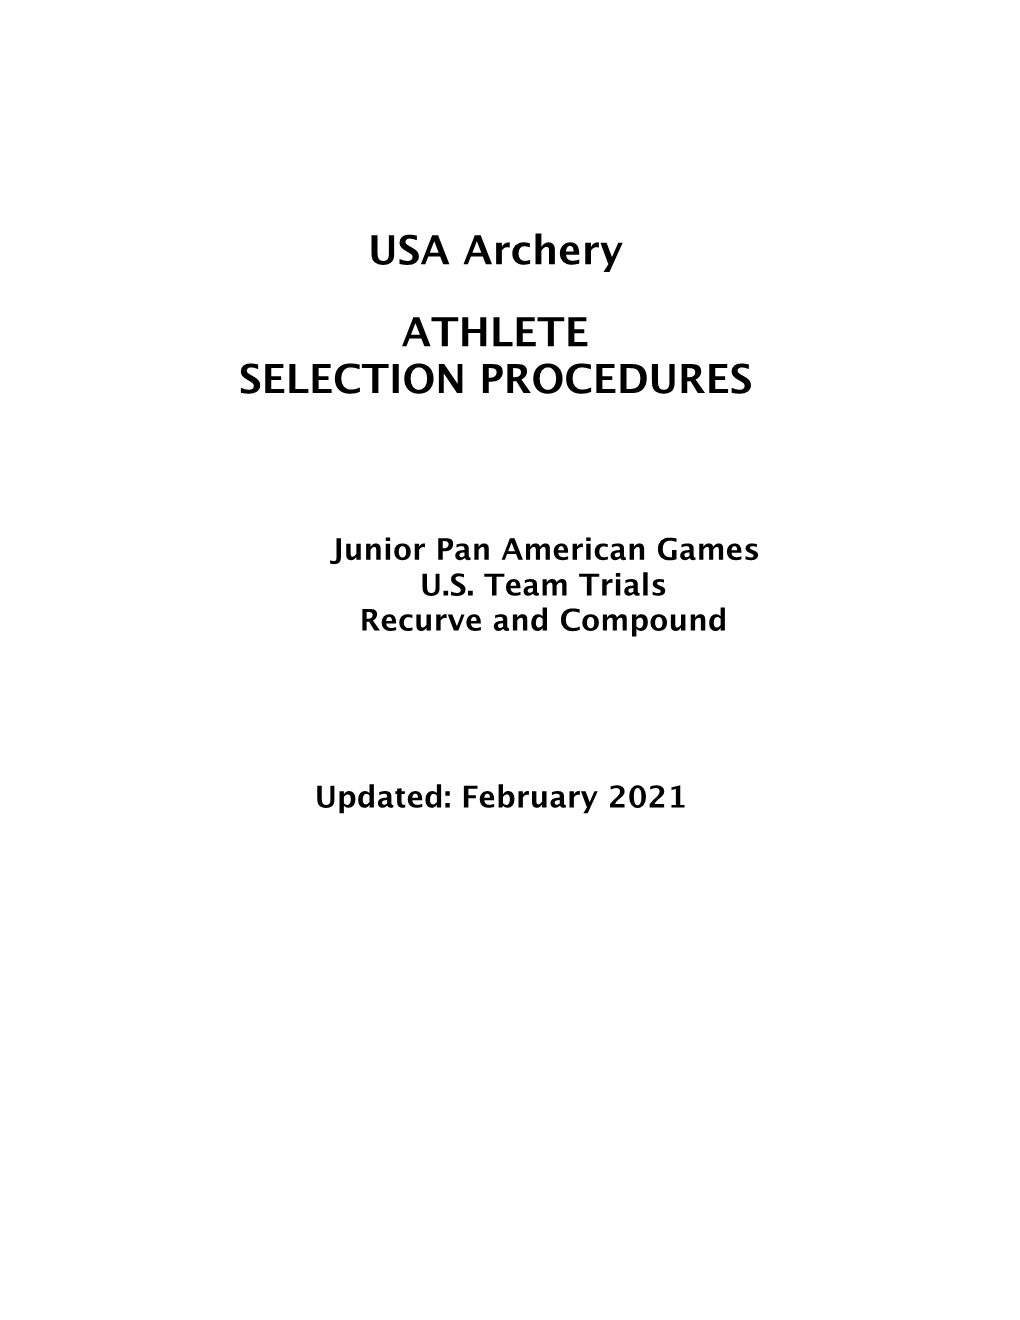 2021 Junior Pan American Games